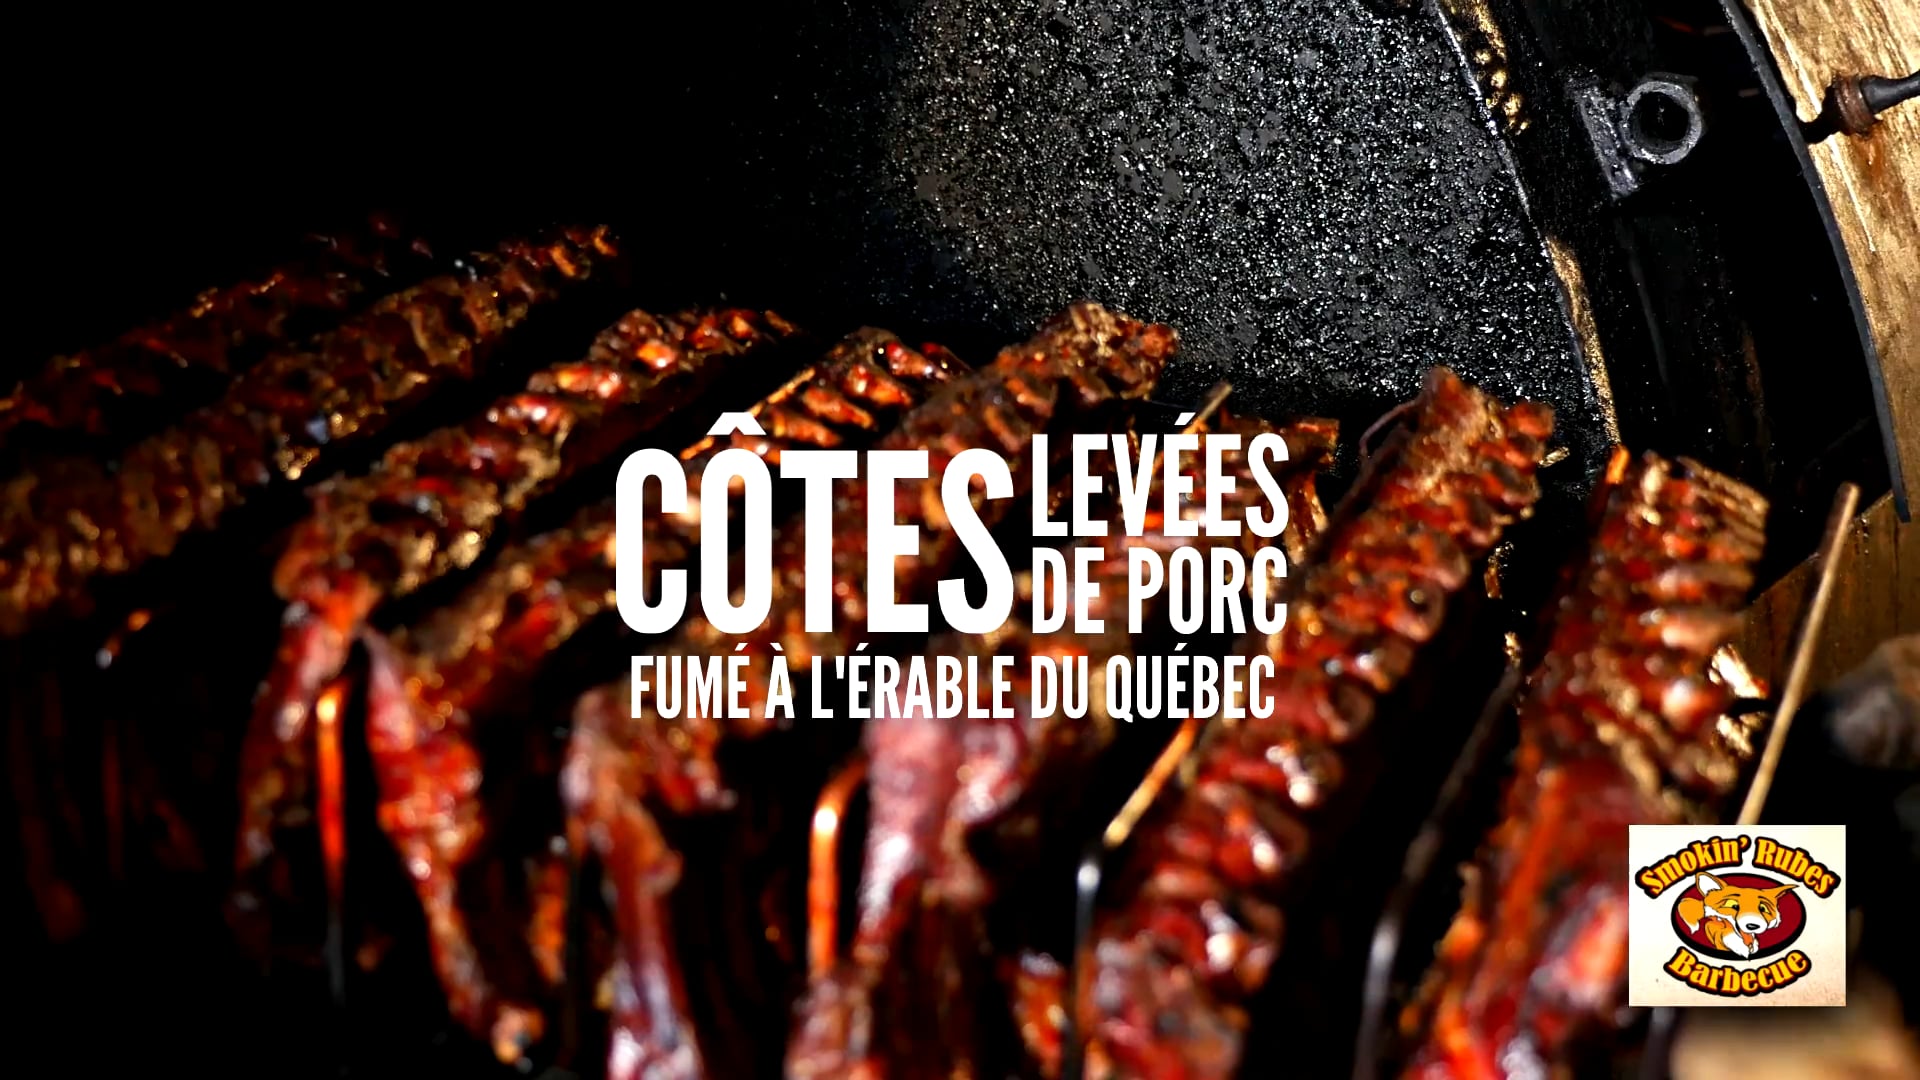 Restaurant Rube Quebec pork back ribs